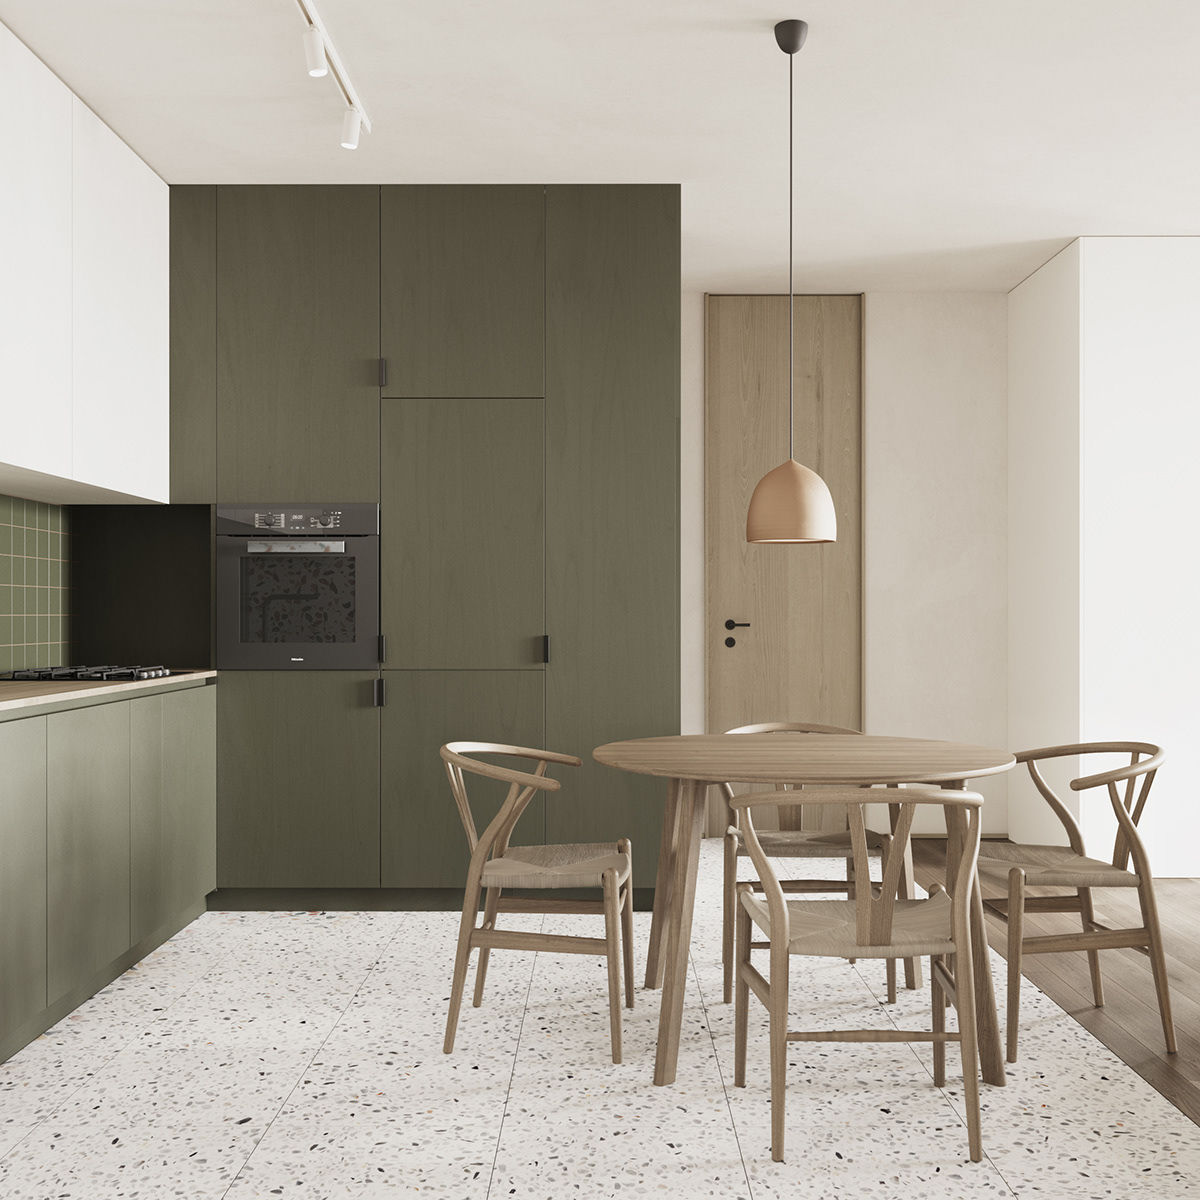 Bếp sử dụng thêm tông xanh lục thẫm tạo điểm nhấn màu sắc cho căn hộ